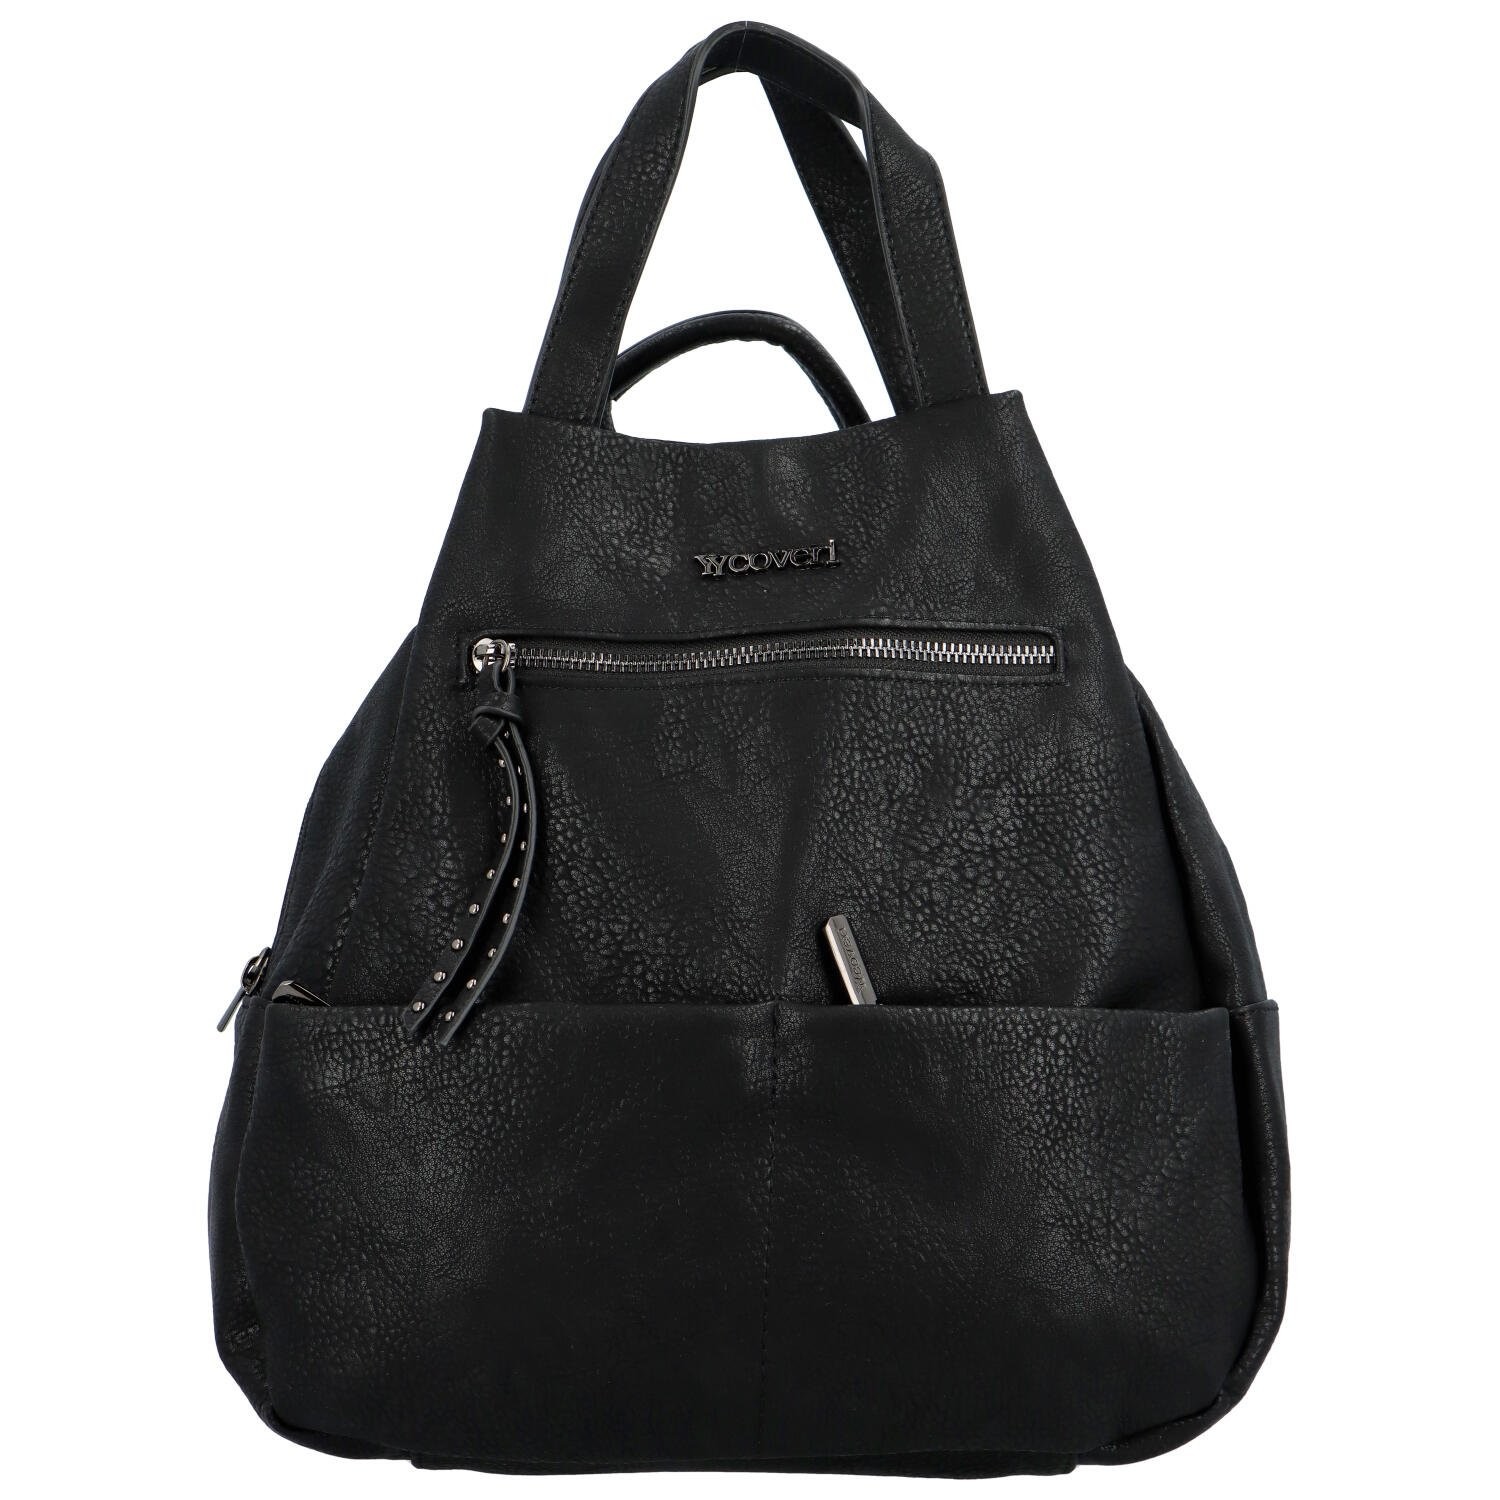 Trendy dámský kabelko/batůžek ve tvaru slzy černý - Coveri Jacinta černá